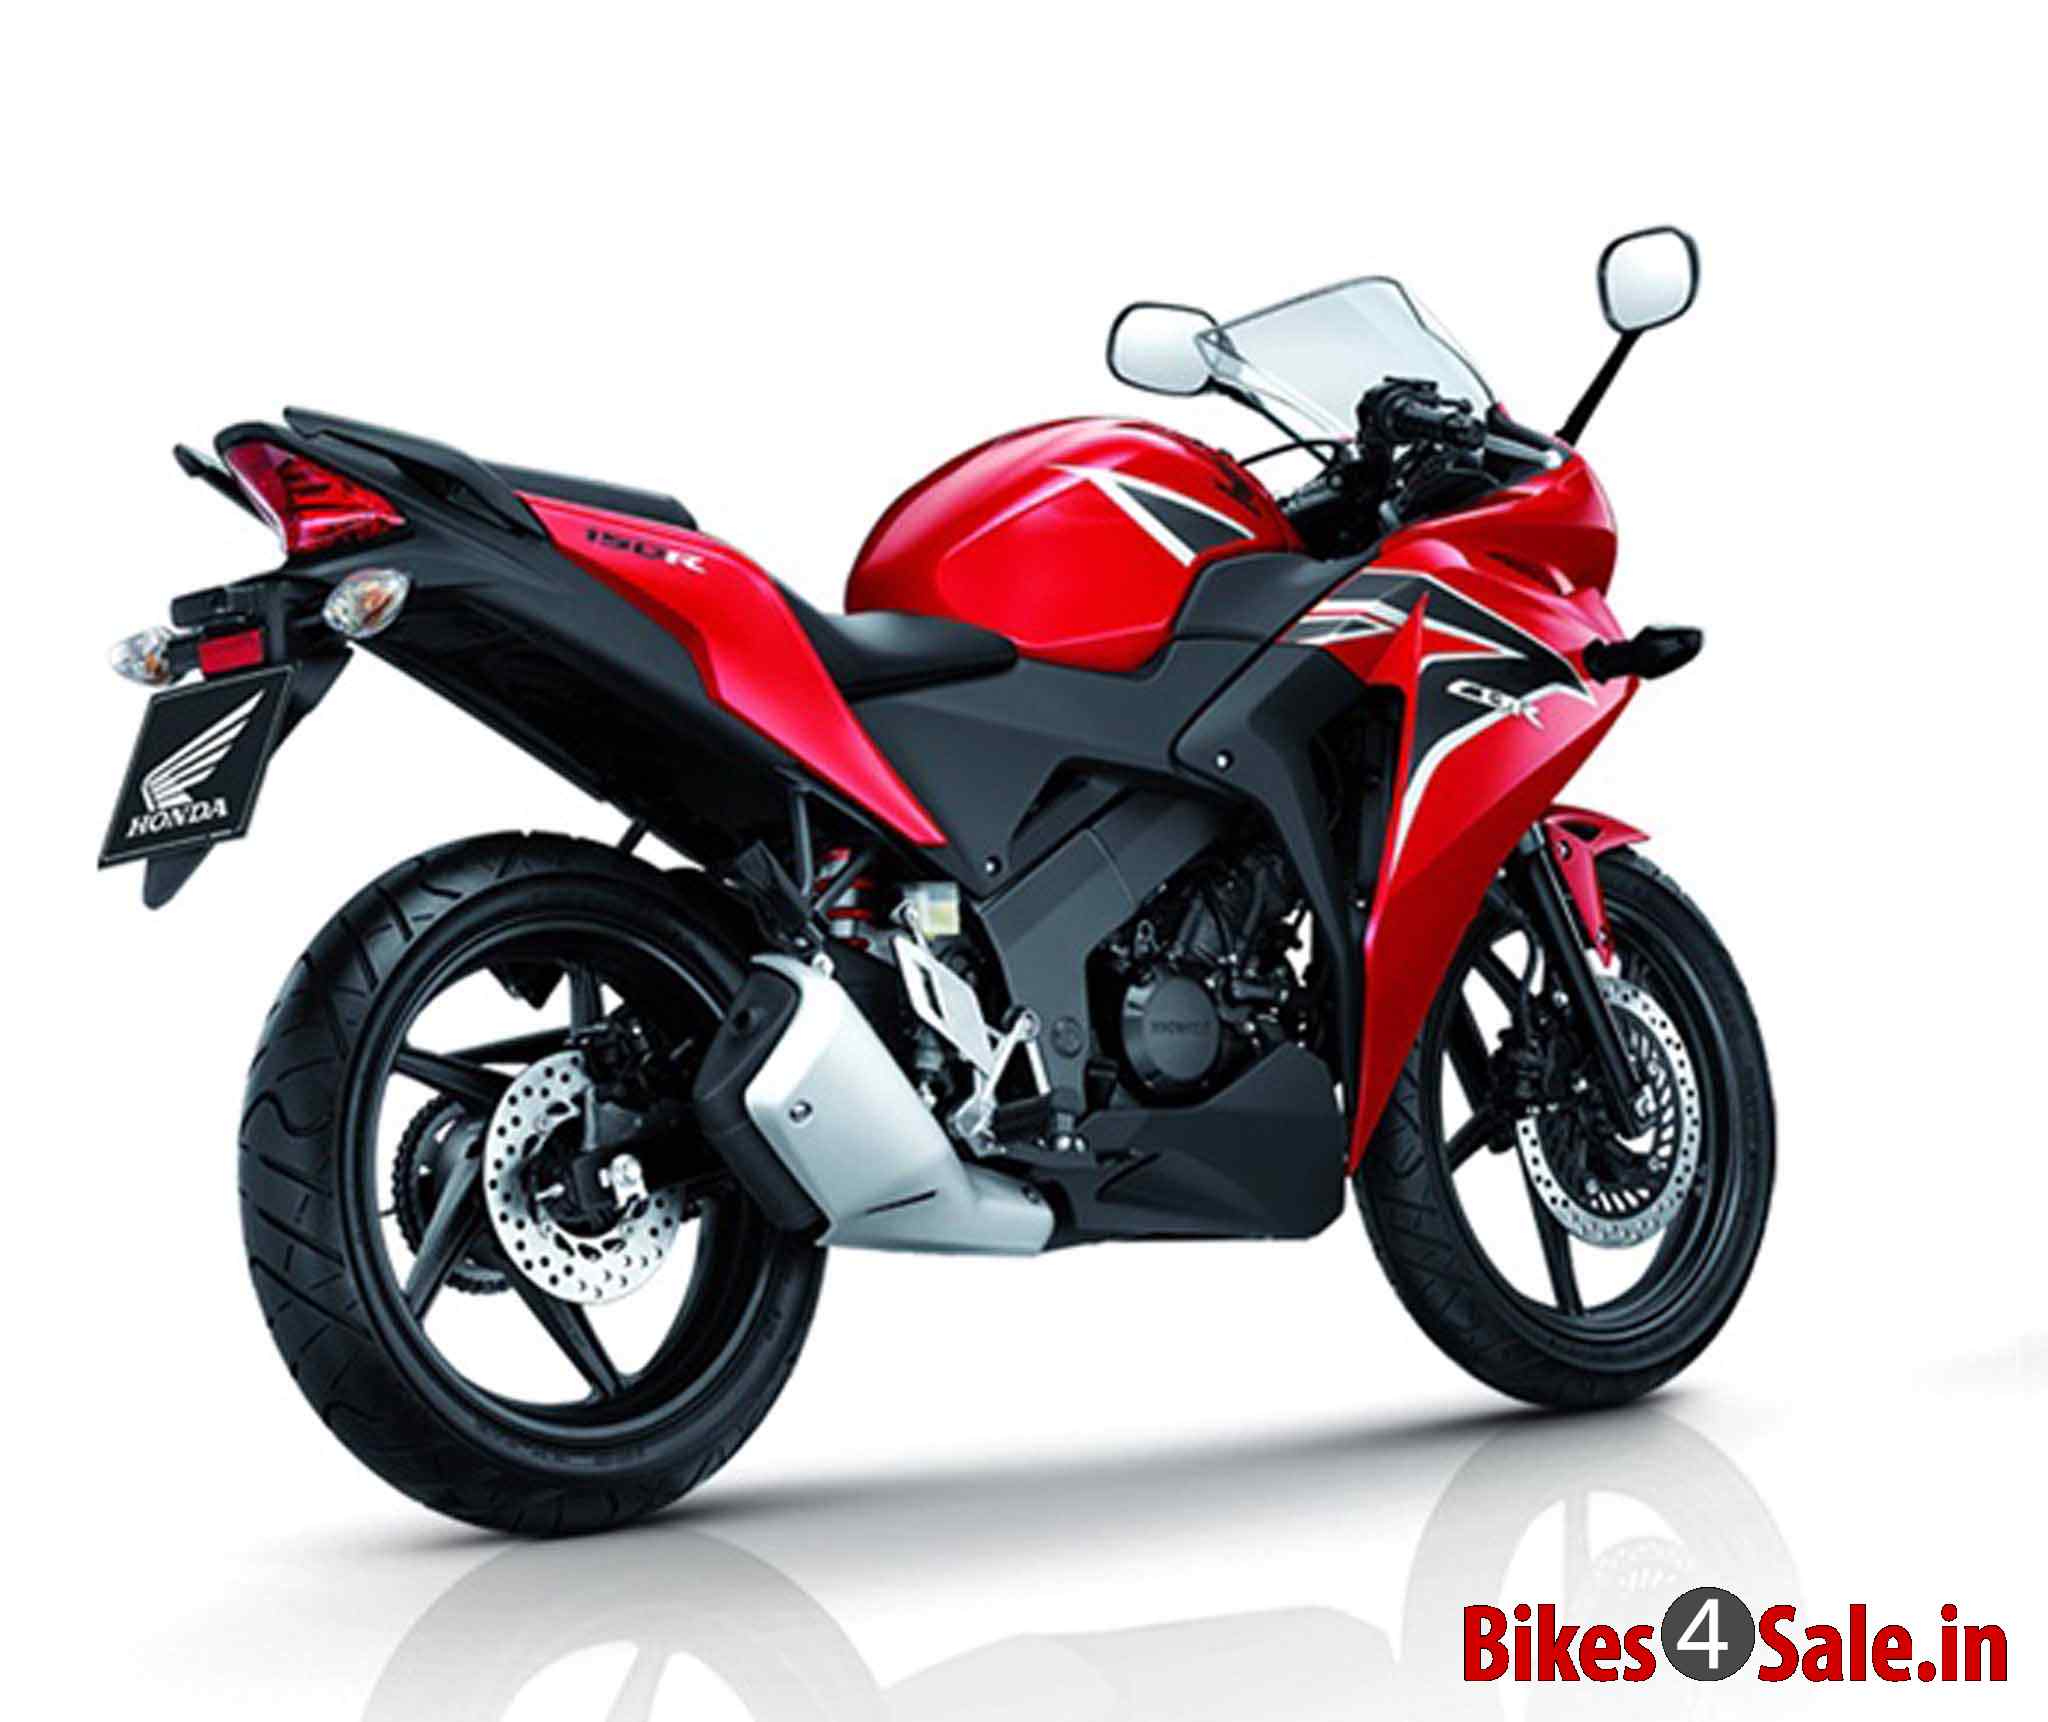 Honda Bike Cbr 150 Price In India